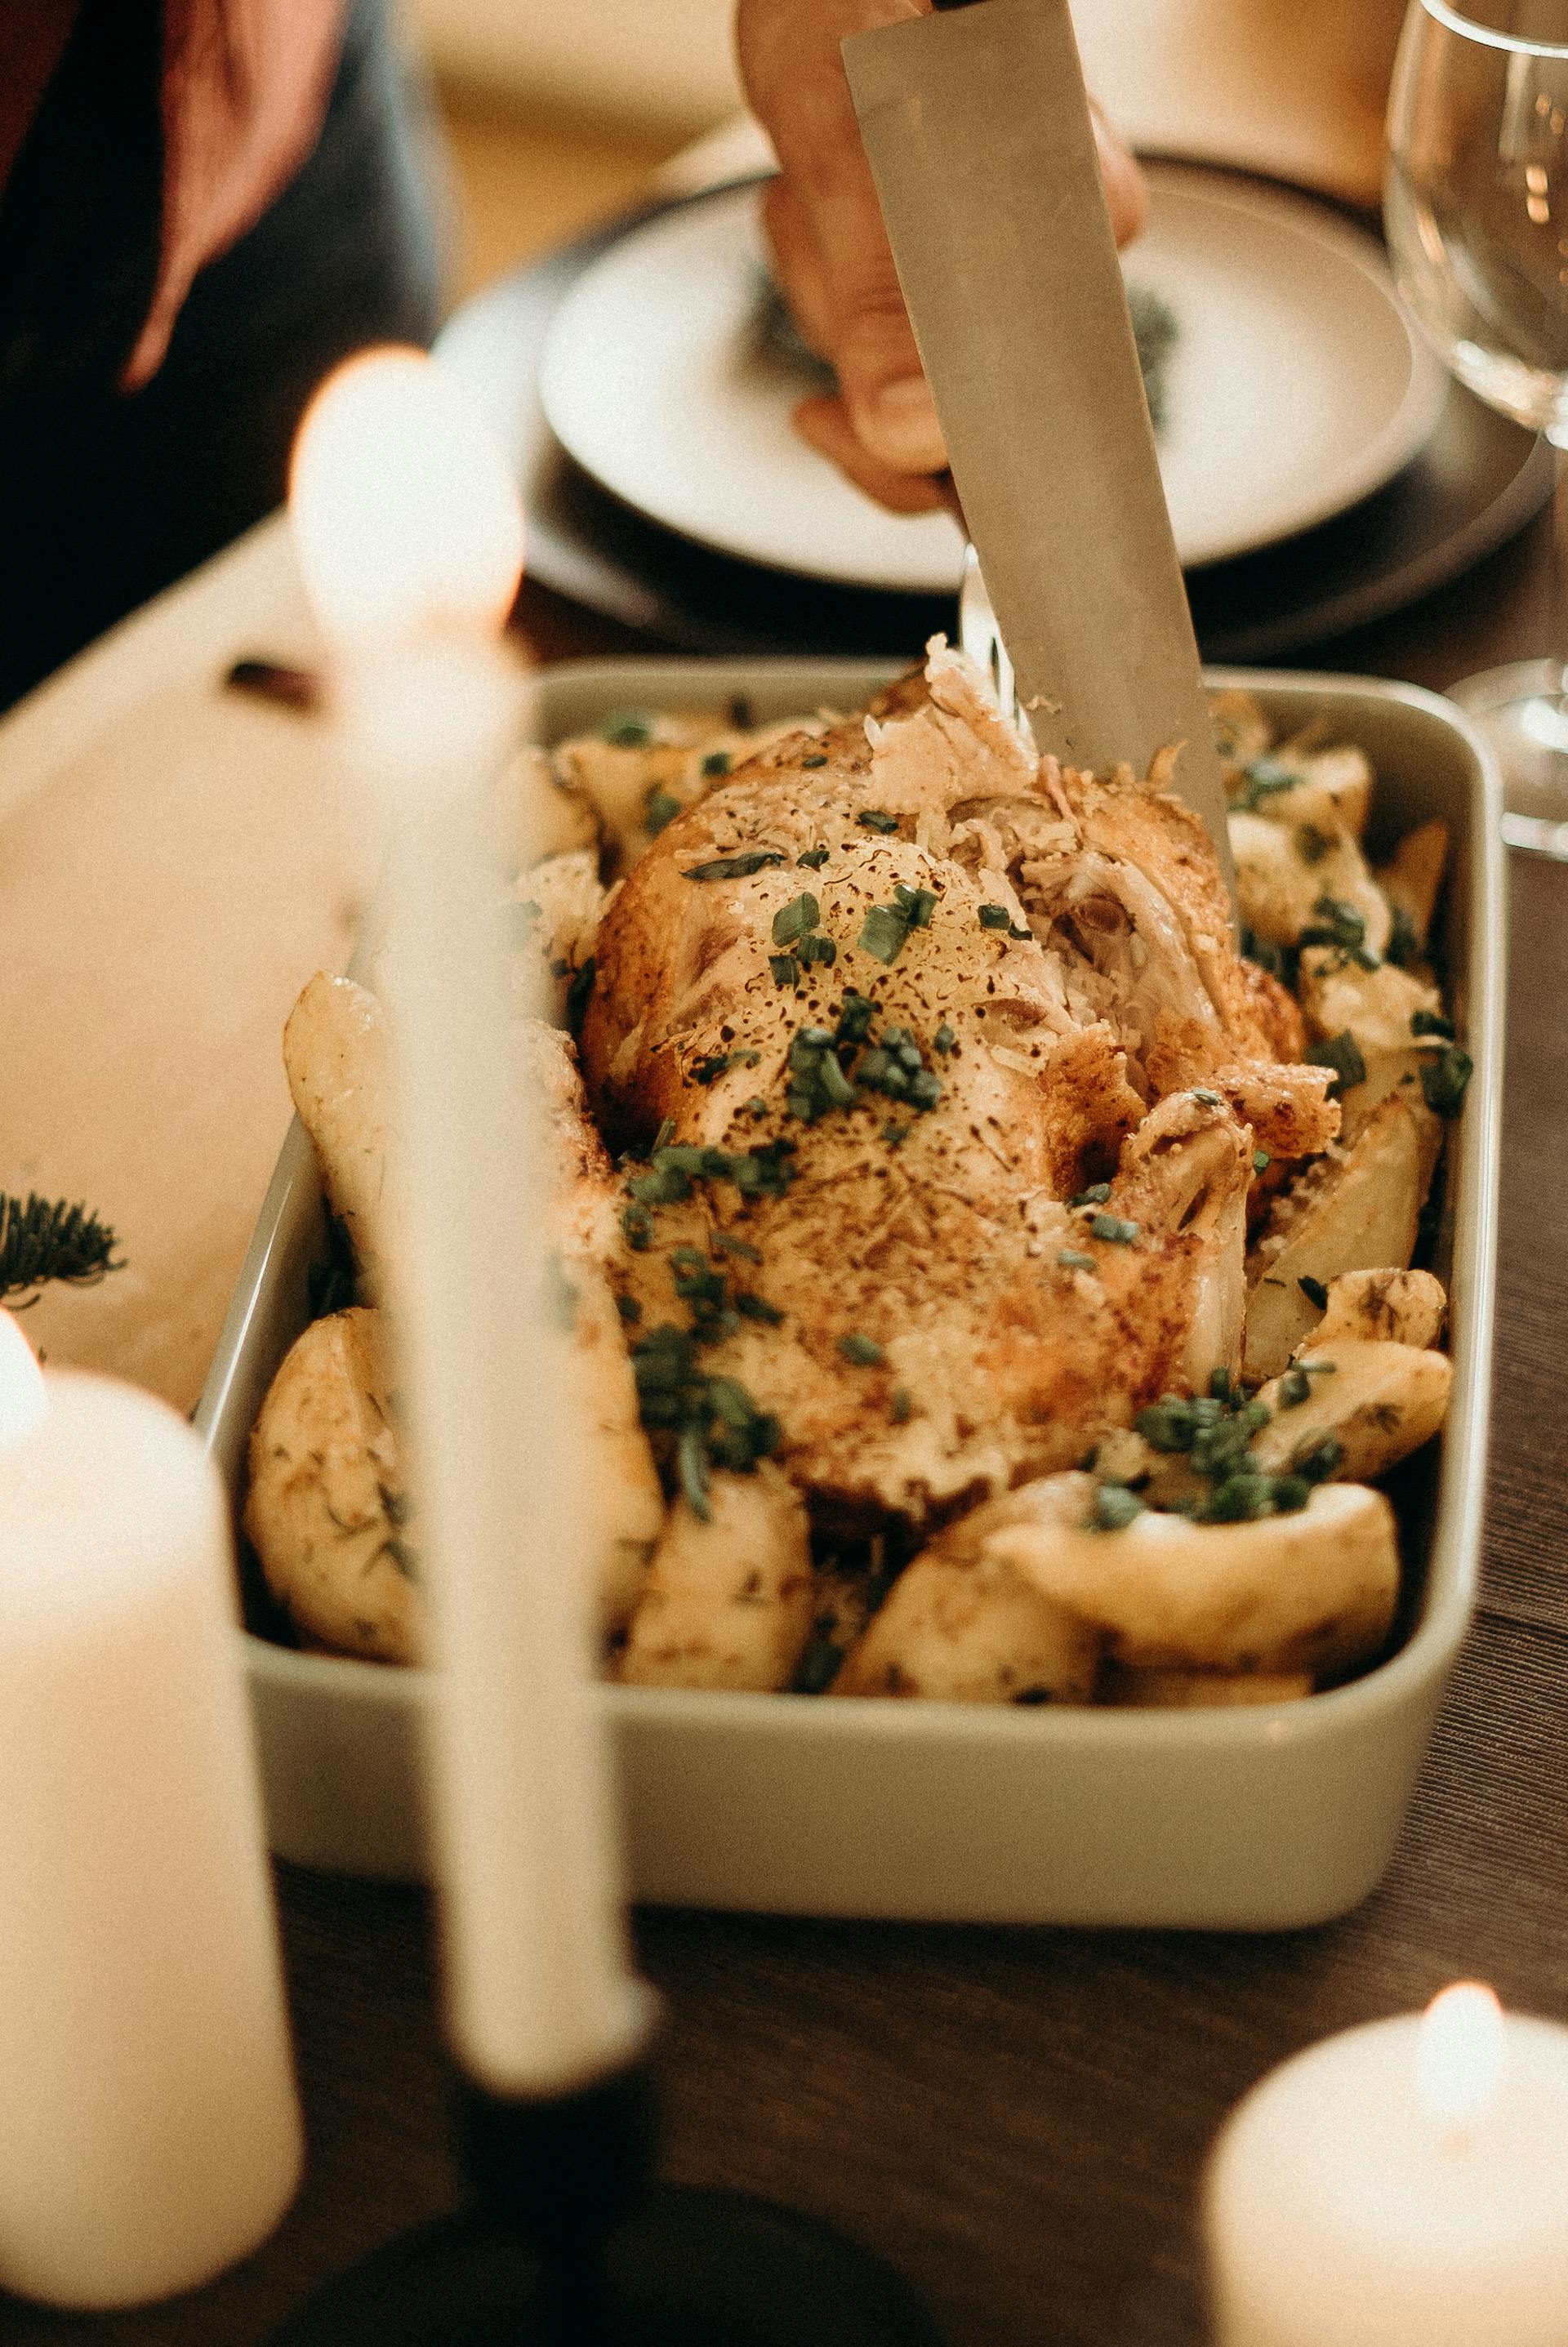 Roast chicken | Source: Pexels